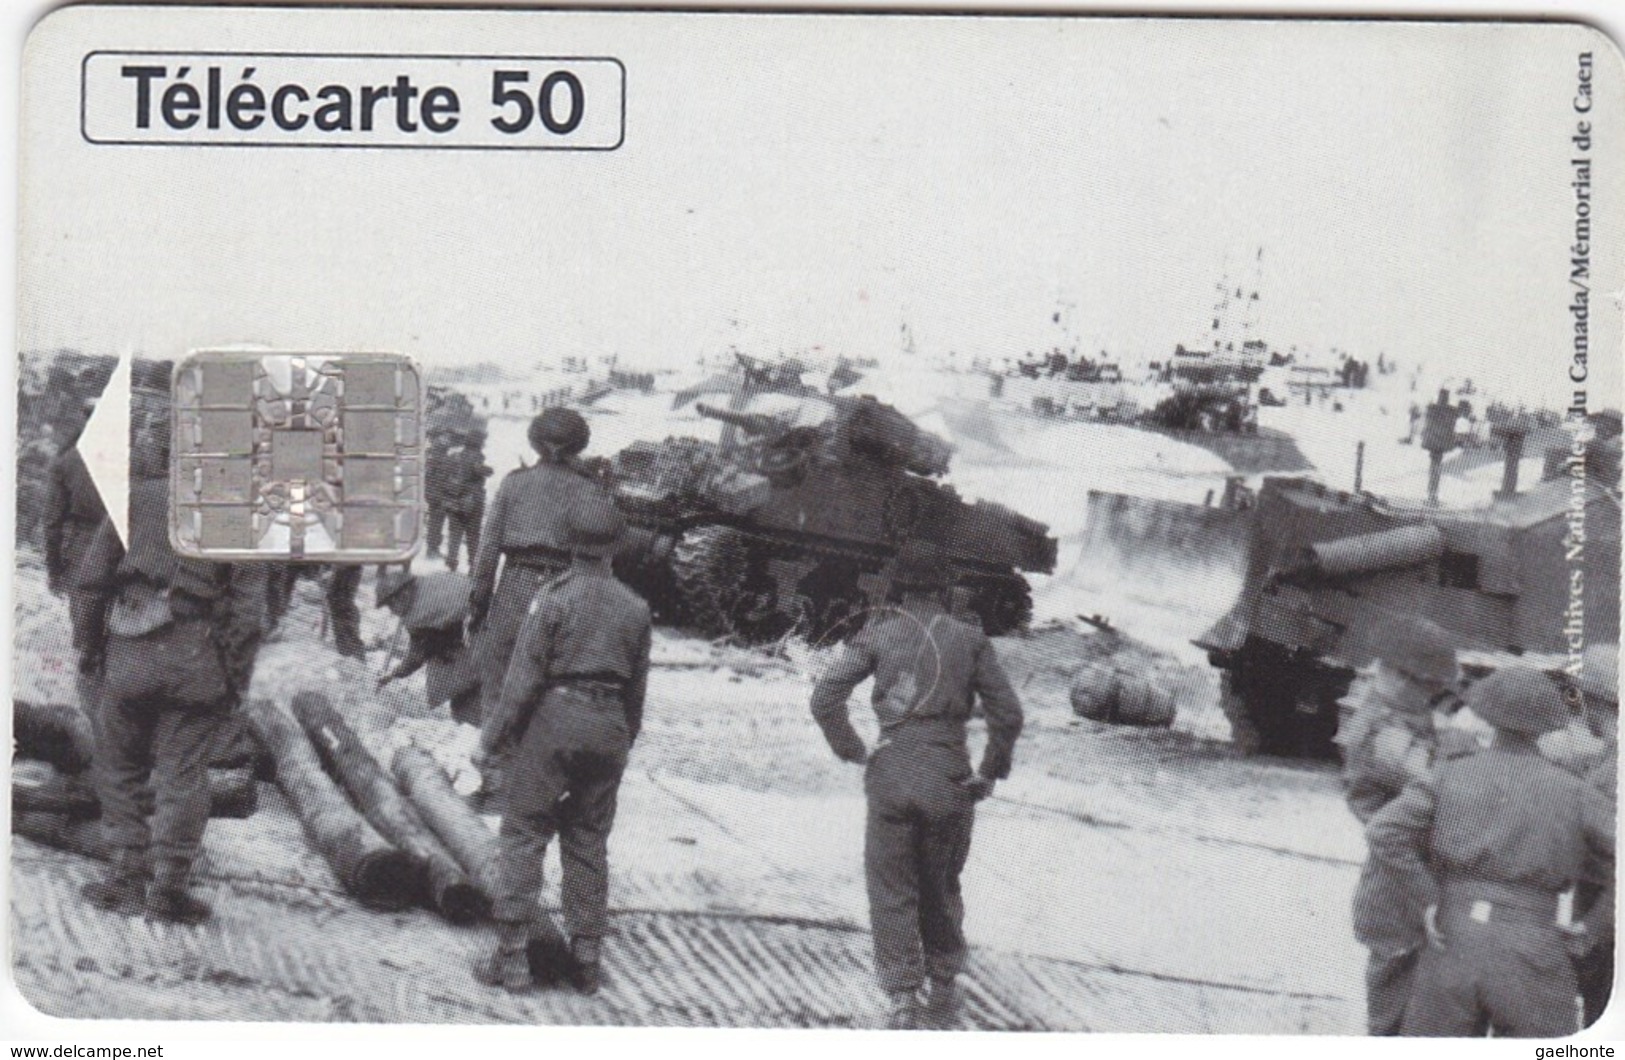 TC118 TÉLÉCARTE 50 UNITÉS - 1944-1994 - 50ème ANNIVERSAIRE DES DEBARQUEMENTS... - COURSEULLE SUR MER 06 JUIN 1944 - Armada